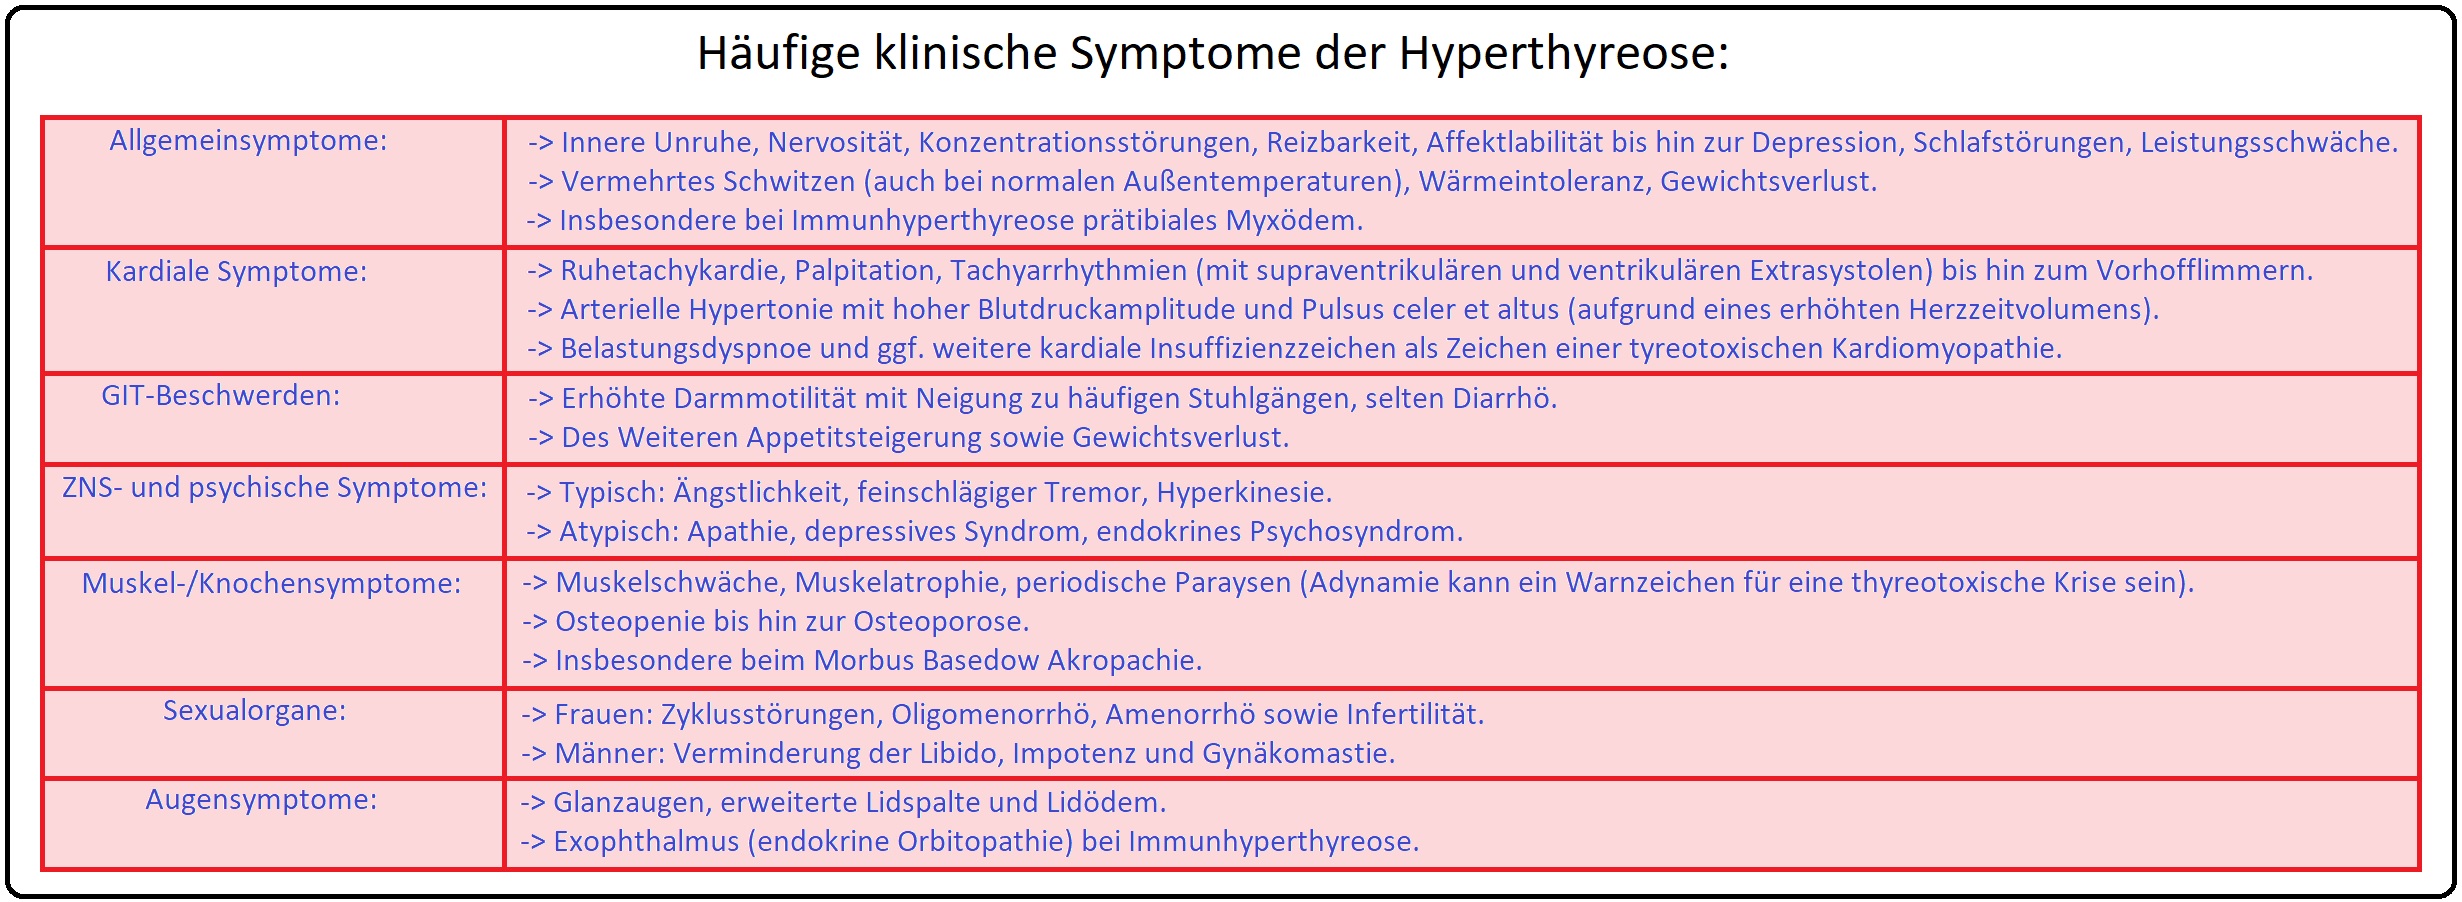 742 Häufige klinische Symptome der Hyperthyreose